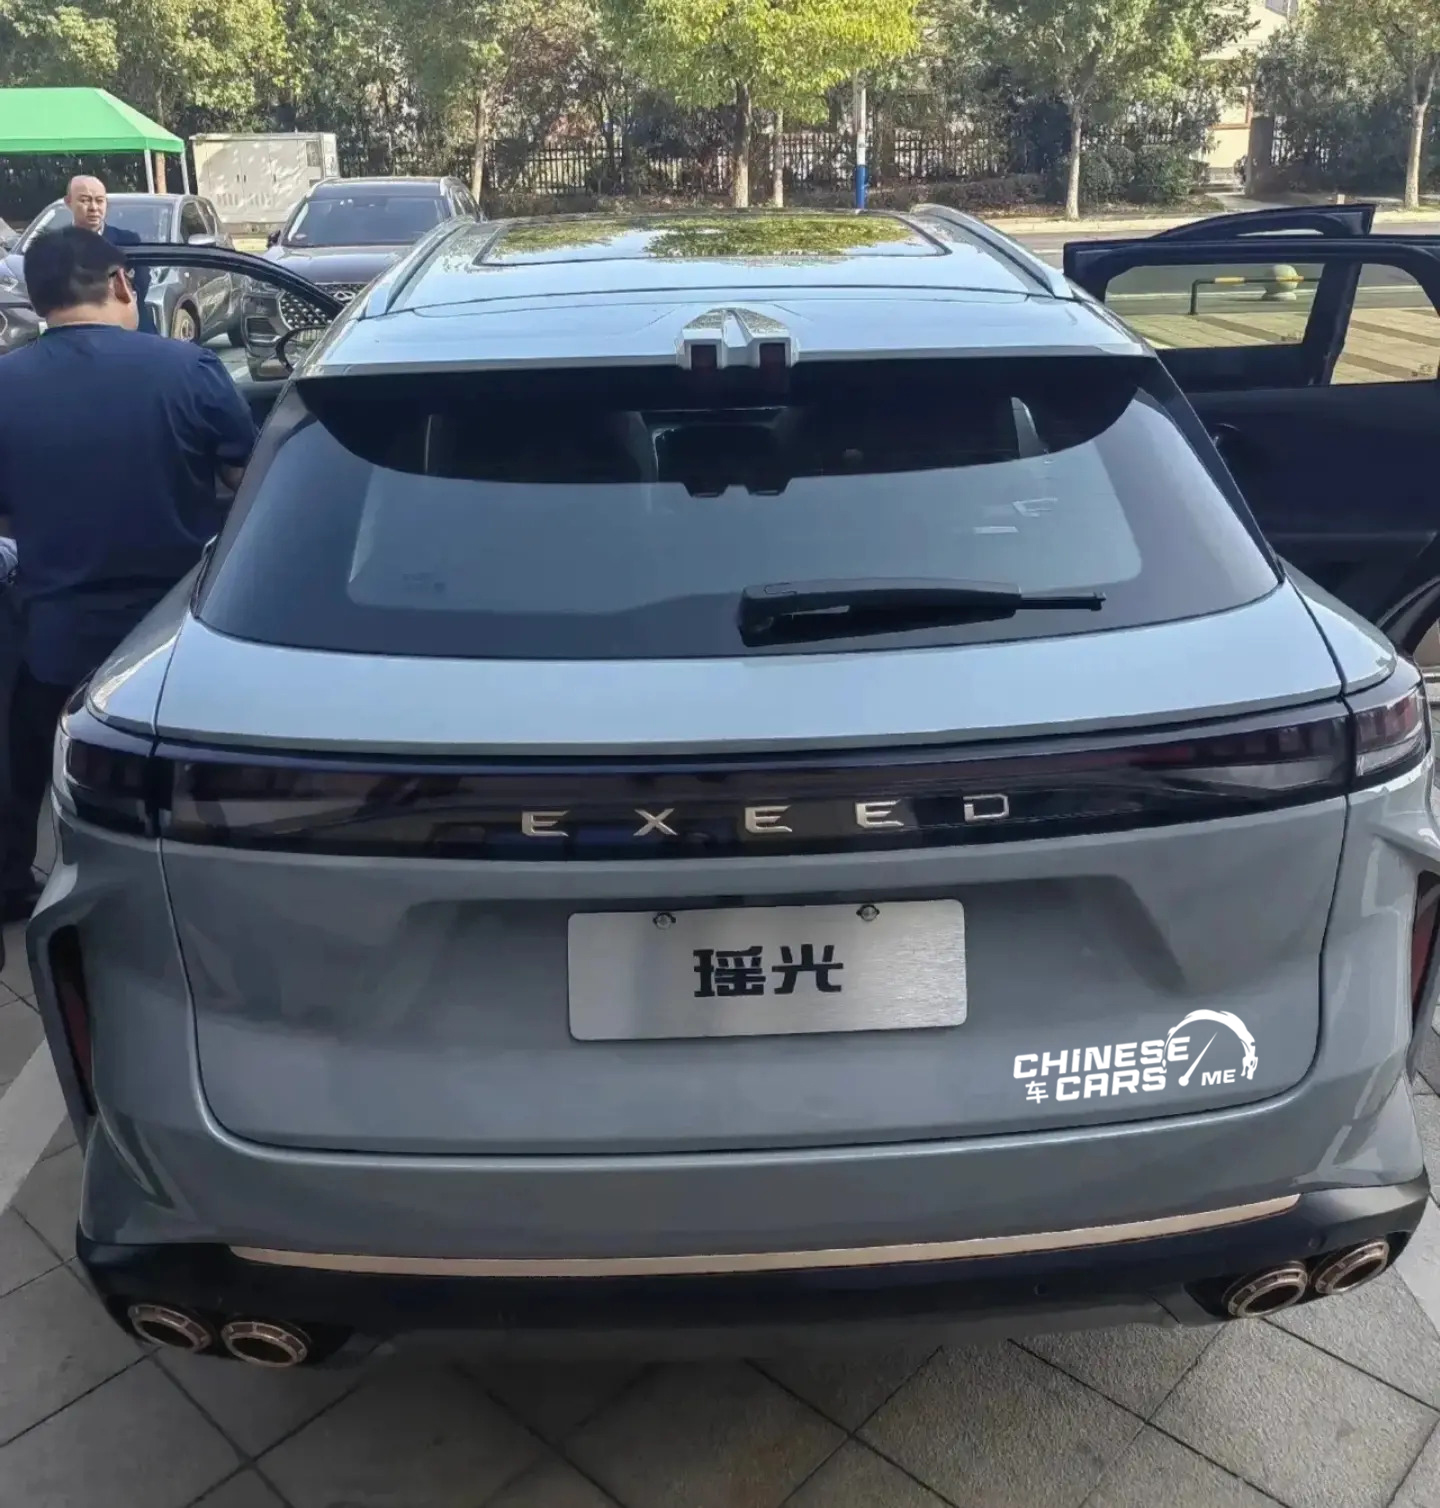 شبكة السيارات الصينية – تقنيات كبيرة وأنظمة سلامة أوروبية على سيارة إكسيد Yaoguang الجديدة كليًا